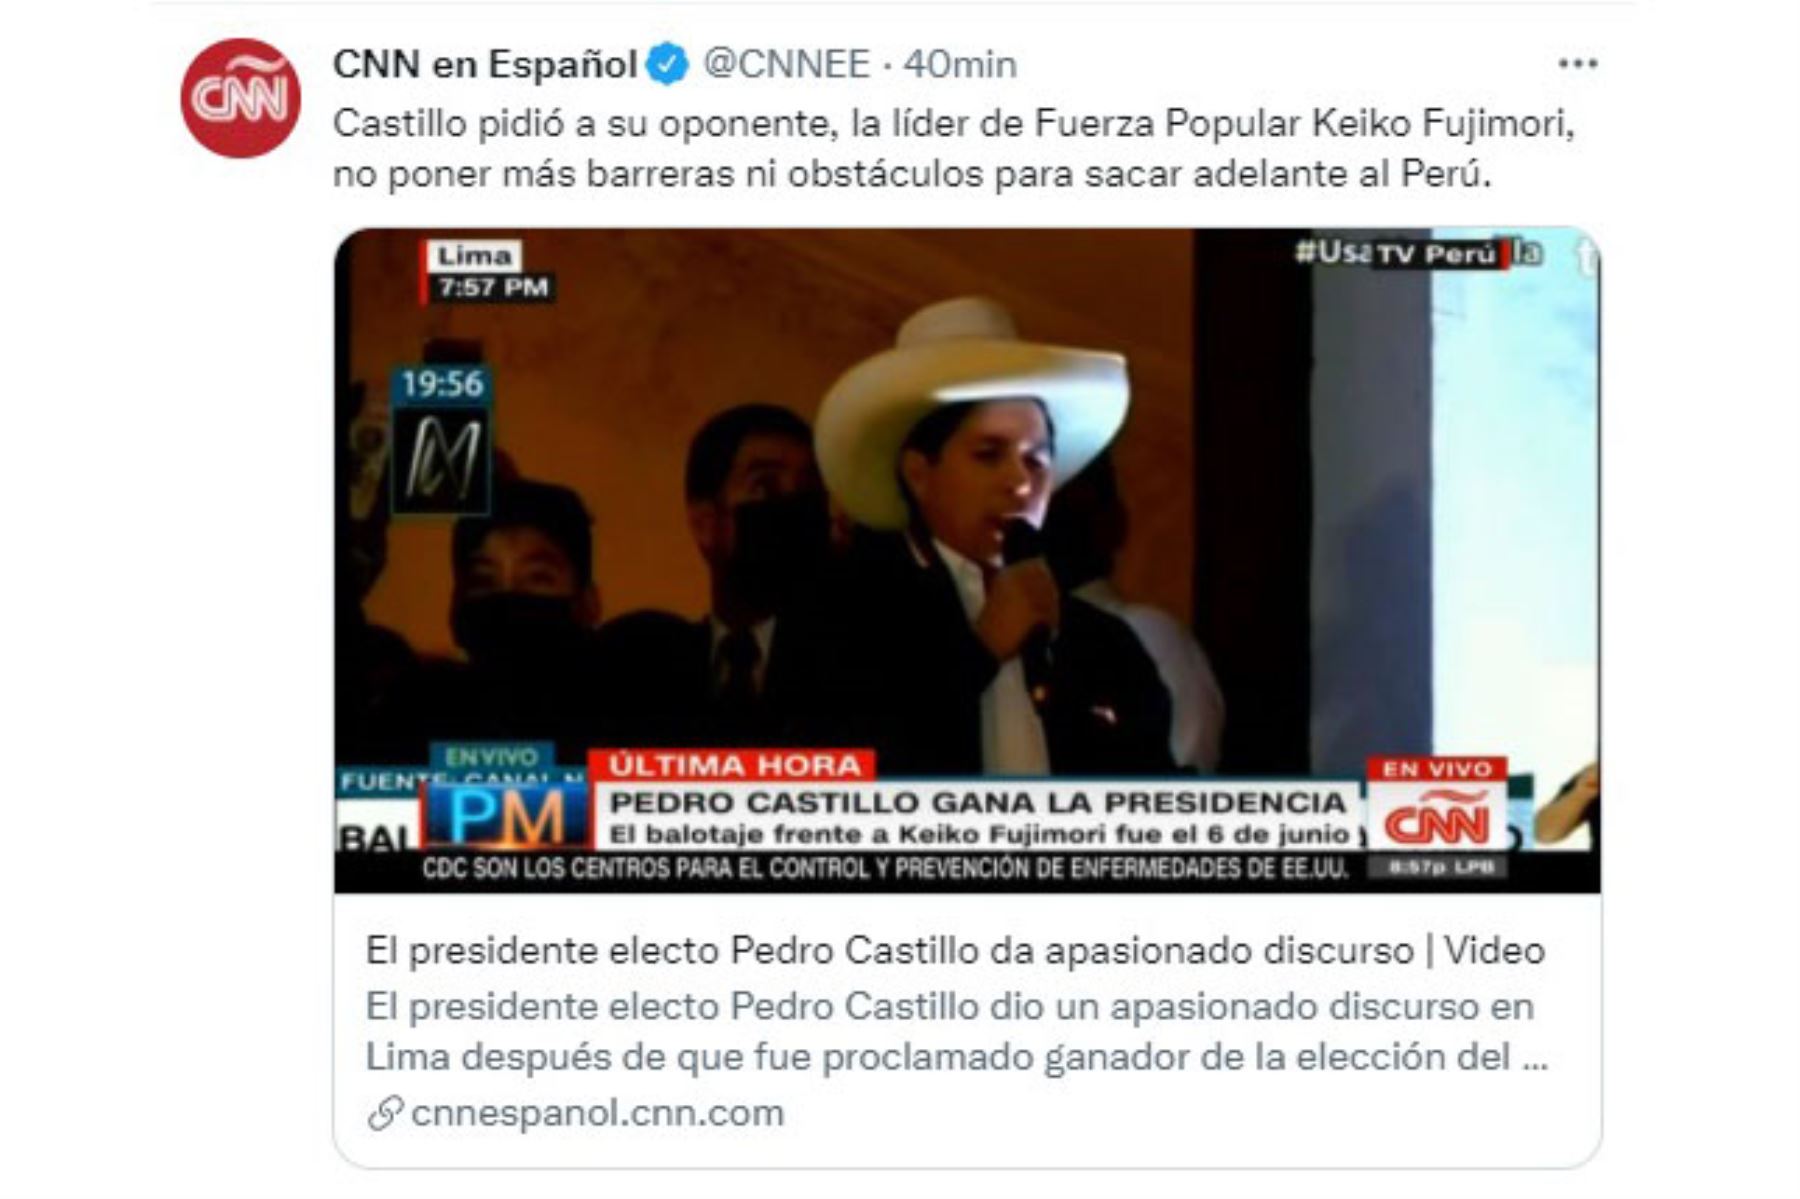 CNN en Español. Diarios del mundo, informan sobre la proclamación del presidente electo Pedro Castillo.
Foto: Captura TV